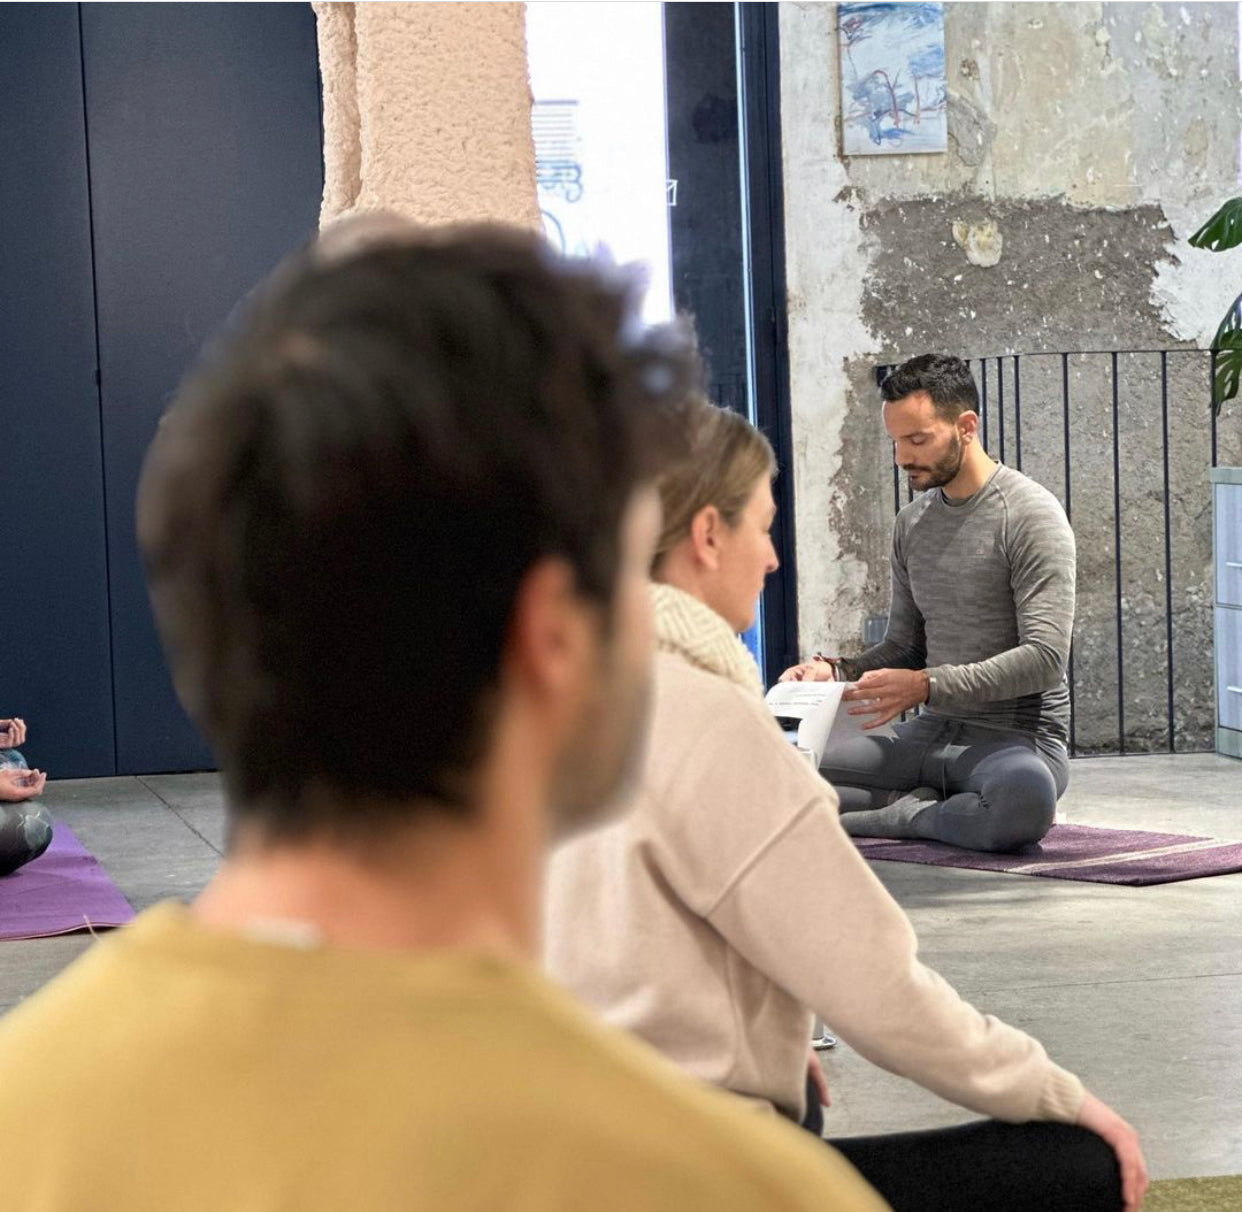 MARZO 2023 - Yoga, meditación y brunch con Roberto Regal <br> Domingo 5 de marzo de 11:00 a 13:00h